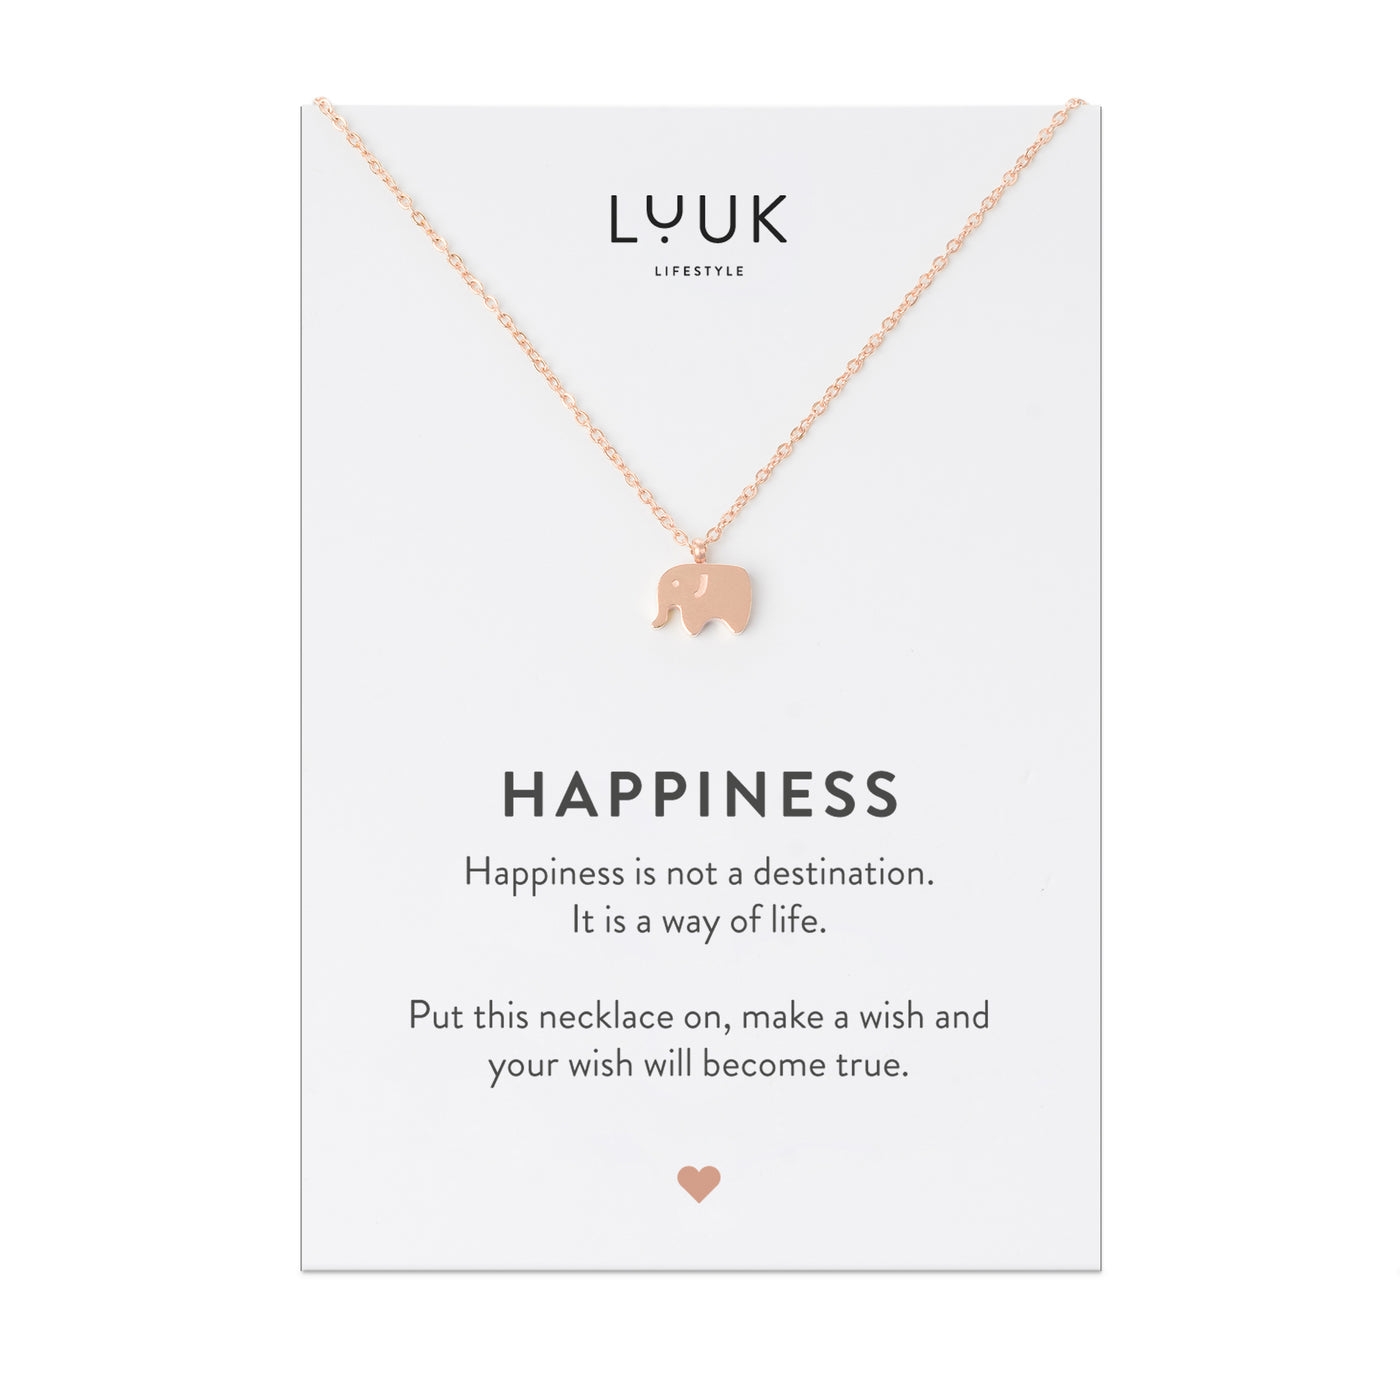 Rosegoldene Halskette mit Elefant Anhänger auf Happiness Spruchkarte von der Marke Luuk Lifestyle